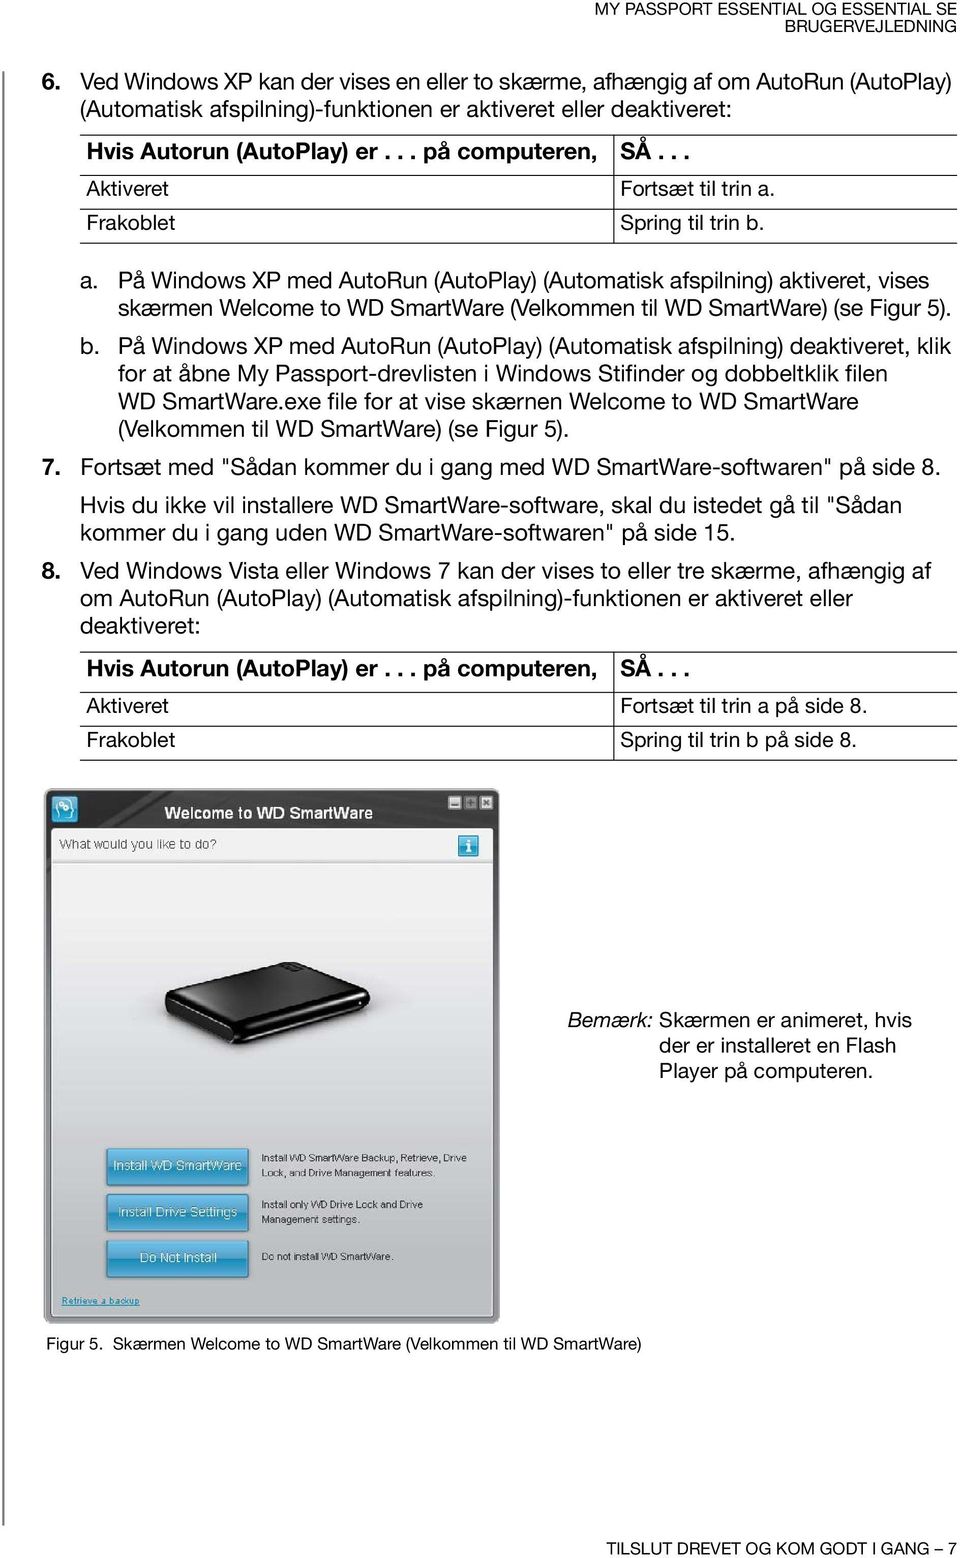 b. På Windows XP med AutoRun (AutoPlay) (Automatisk afspilning) deaktiveret, klik for at åbne My Passport-drevlisten i Windows Stifinder og dobbeltklik filen WD SmartWare.